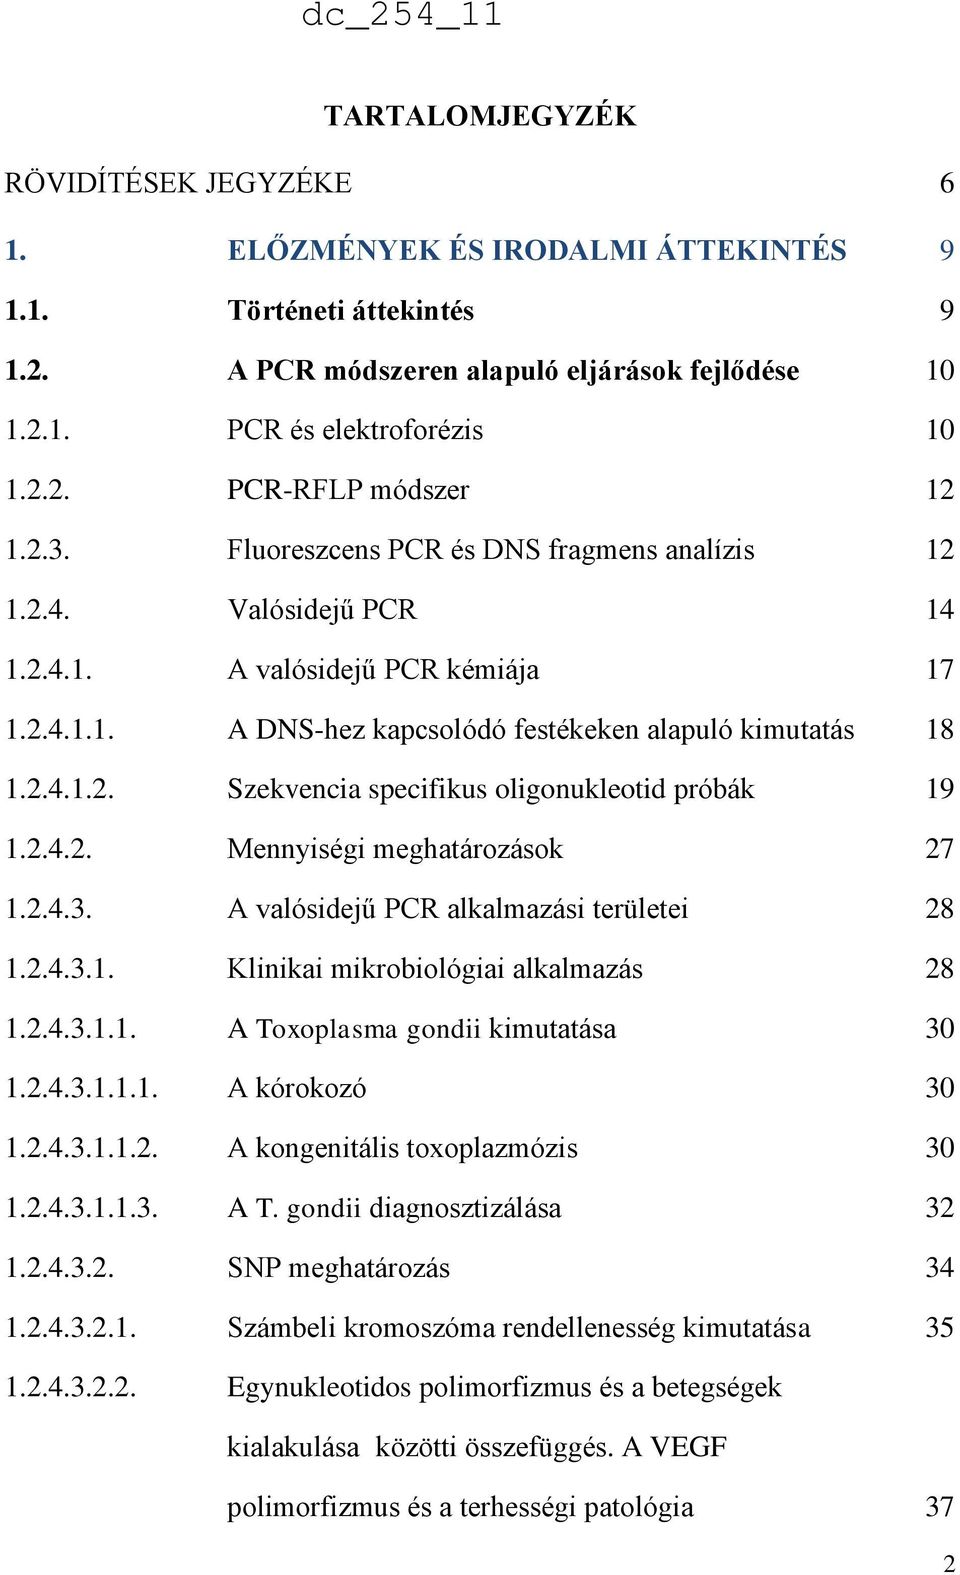 2.4.2. Mennyiségi meghatározások 27 1.2.4.3. A valósidejű PCR alkalmazási területei 28 1.2.4.3.1. Klinikai mikrobiológiai alkalmazás 28 1.2.4.3.1.1. A Toxoplasma gondii kimutatása 30 1.2.4.3.1.1.1. A kórokozó 30 1.